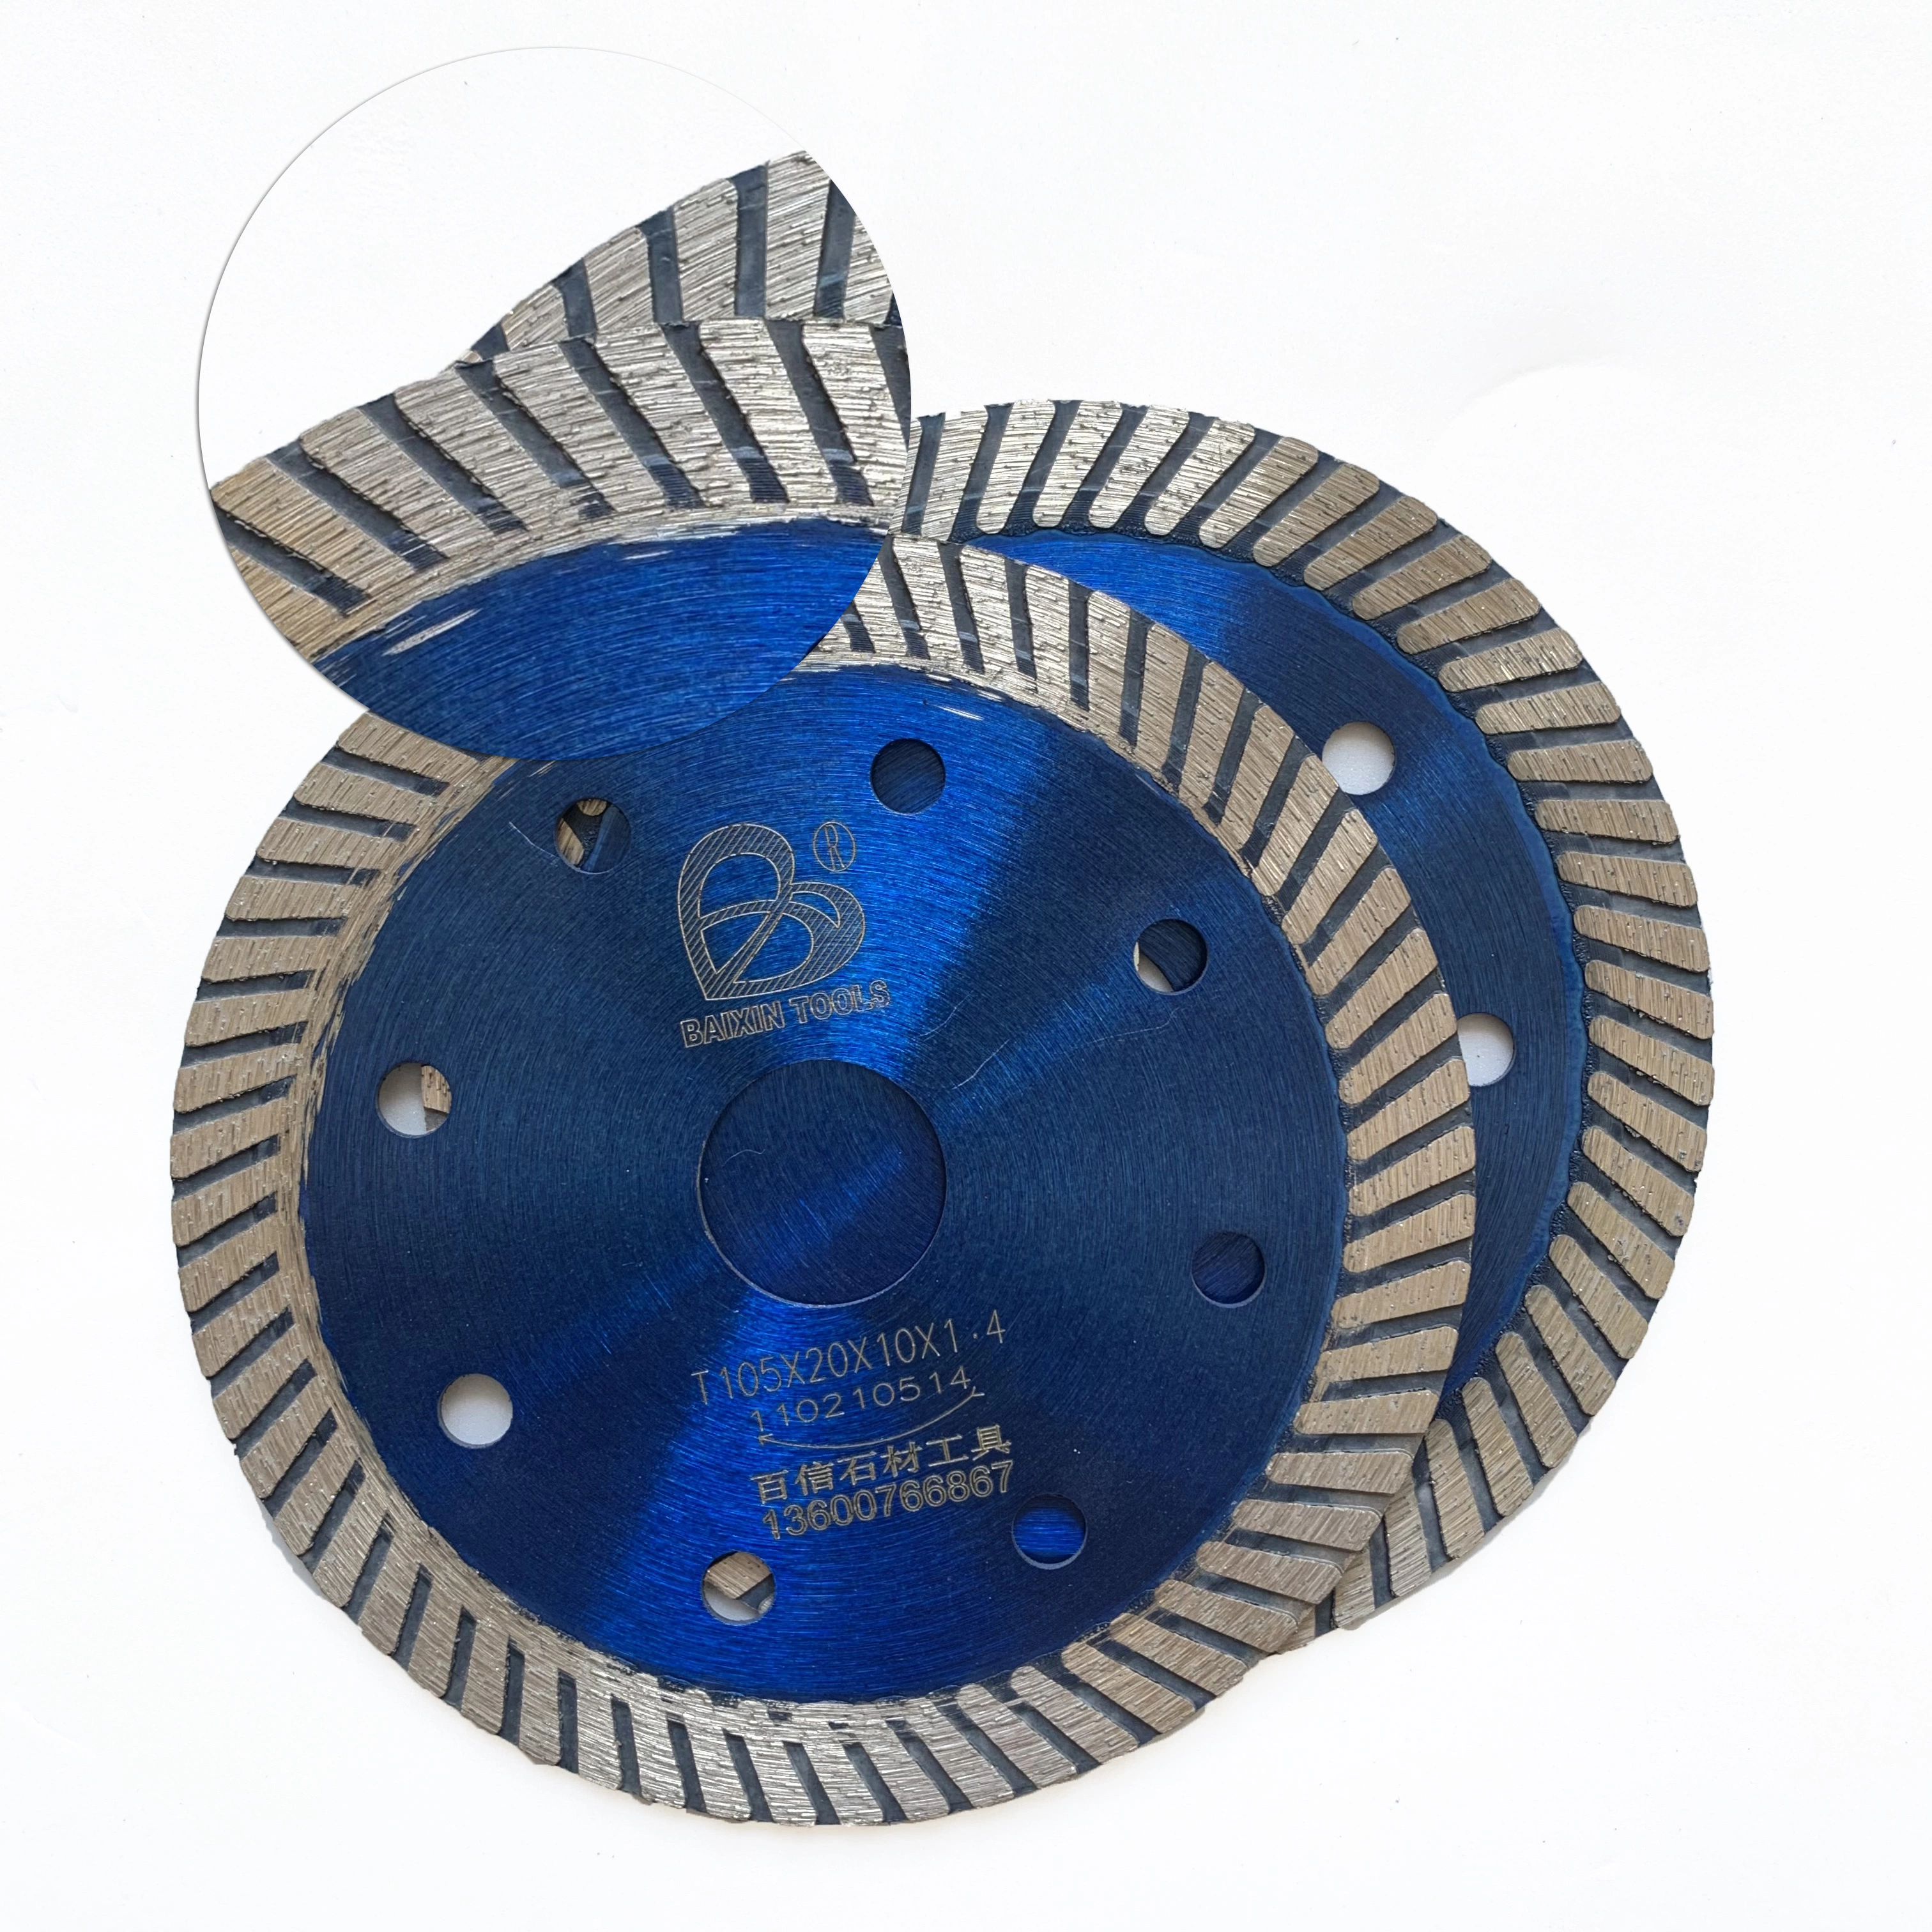 Turbina de 105mm ultrafino de baldosas de cerámica de granito del disco de corte de diamantes